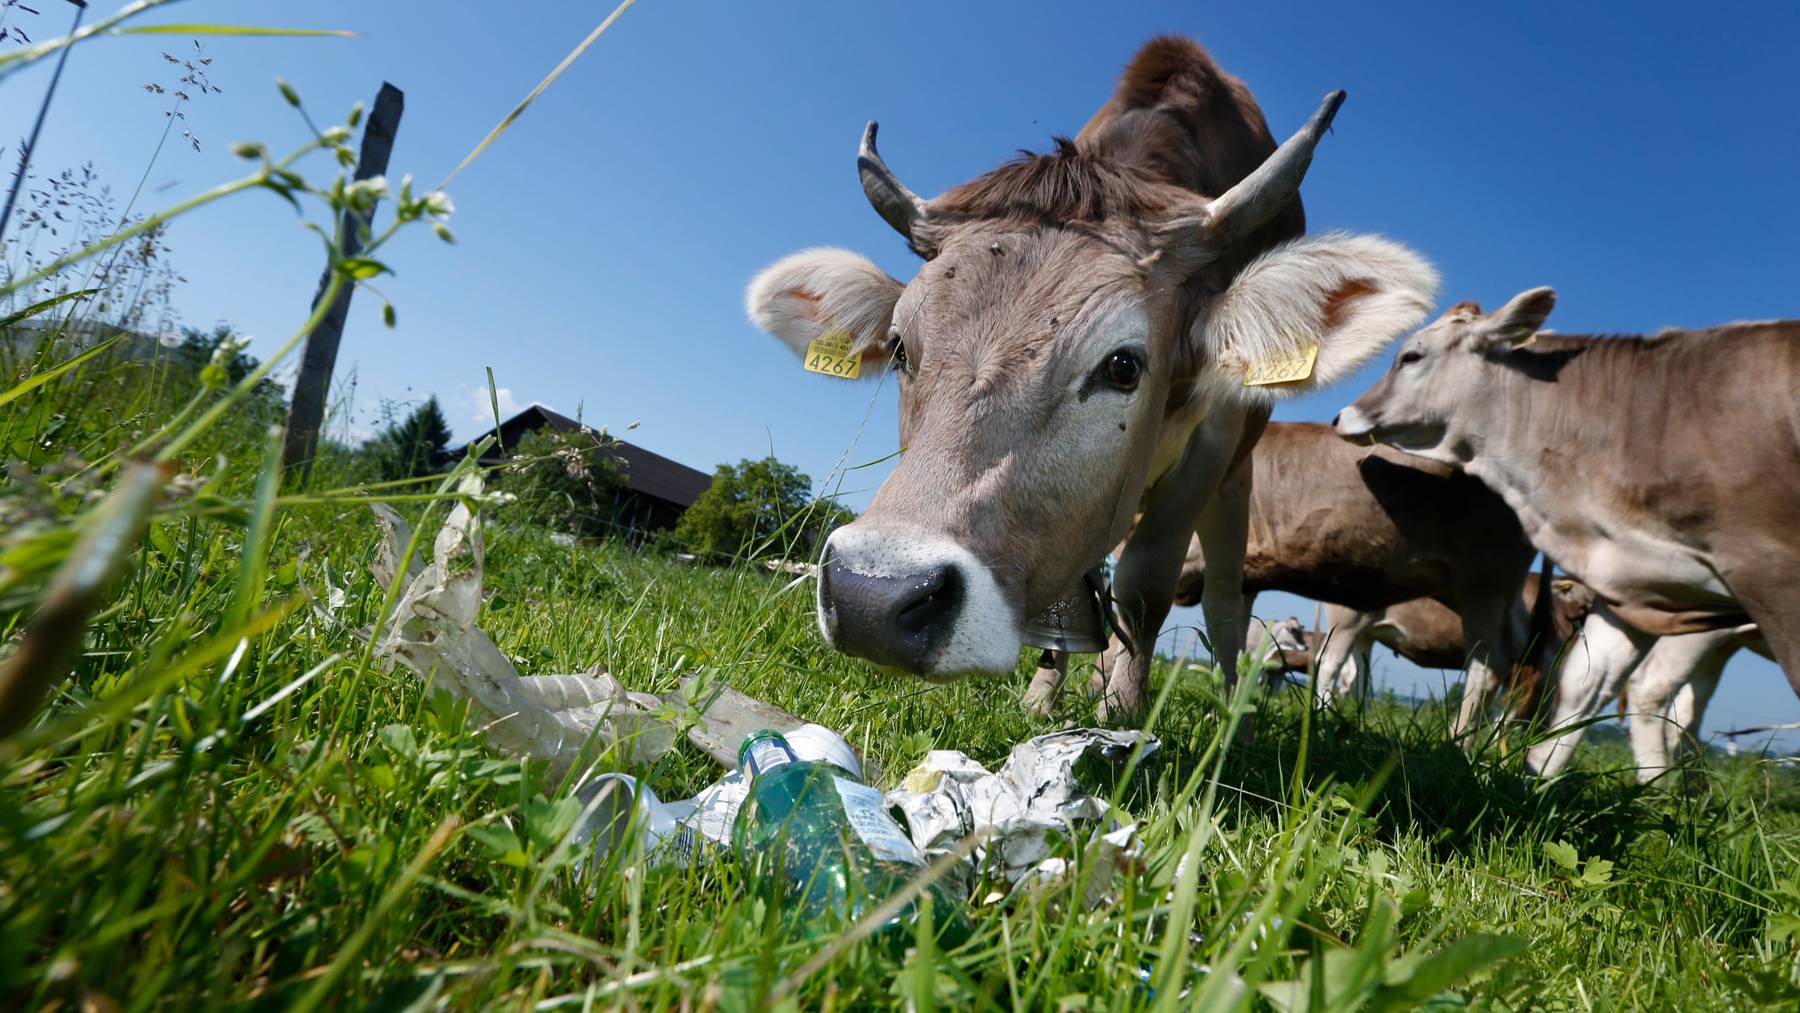 Abfall auf Wiesen stellt für Kühe eine Gefahr dar.